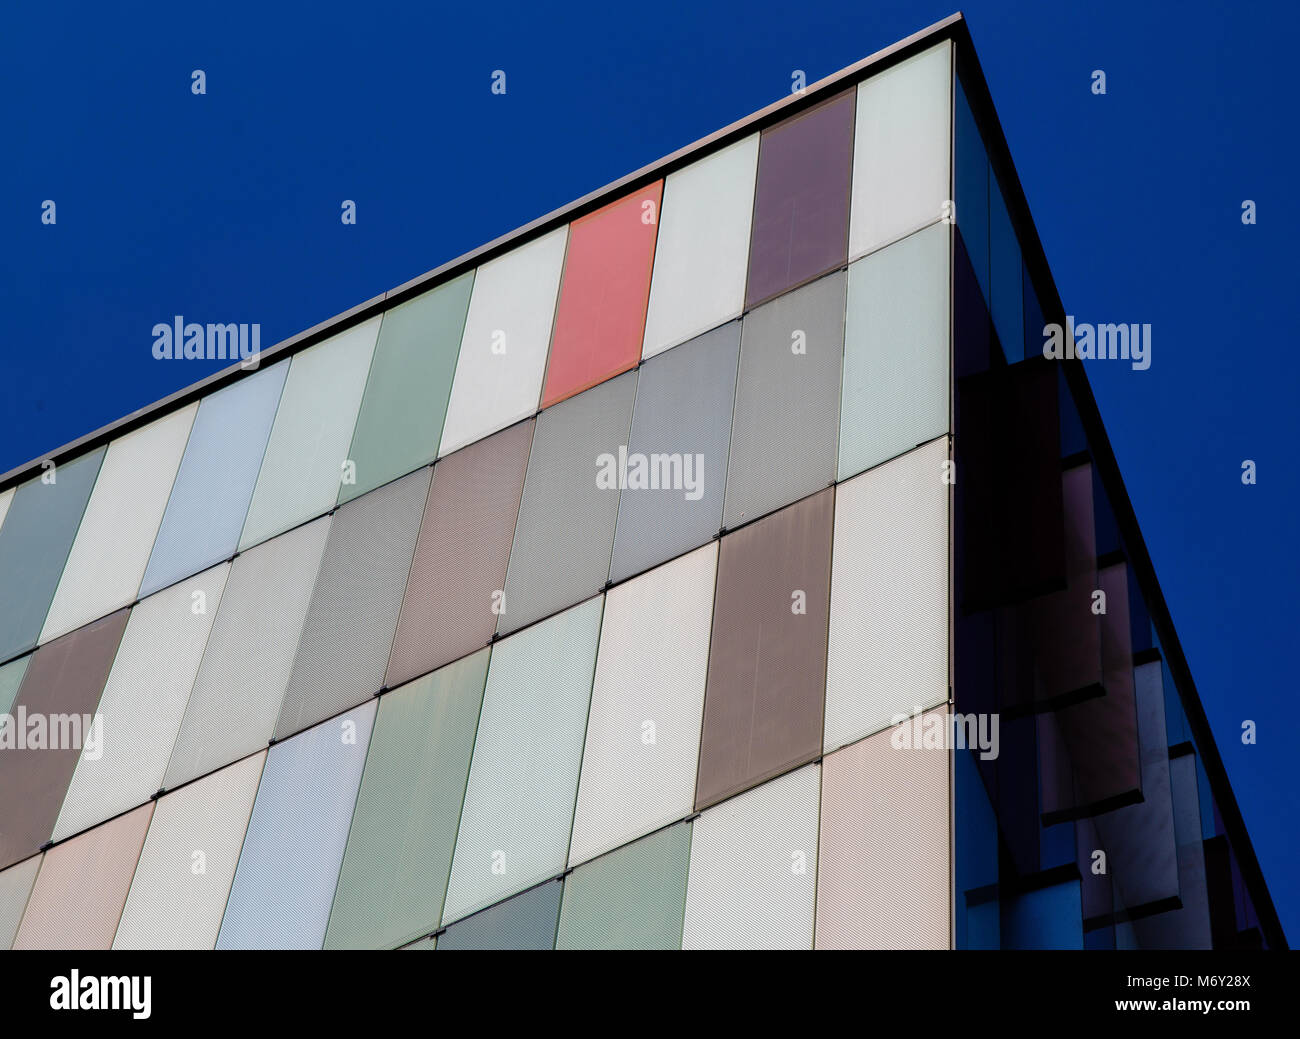 Mailand, Italien - 8. August 2016: Moderne Fassade eines bunten Bürogebäude in Mailand, Italien Stockfoto